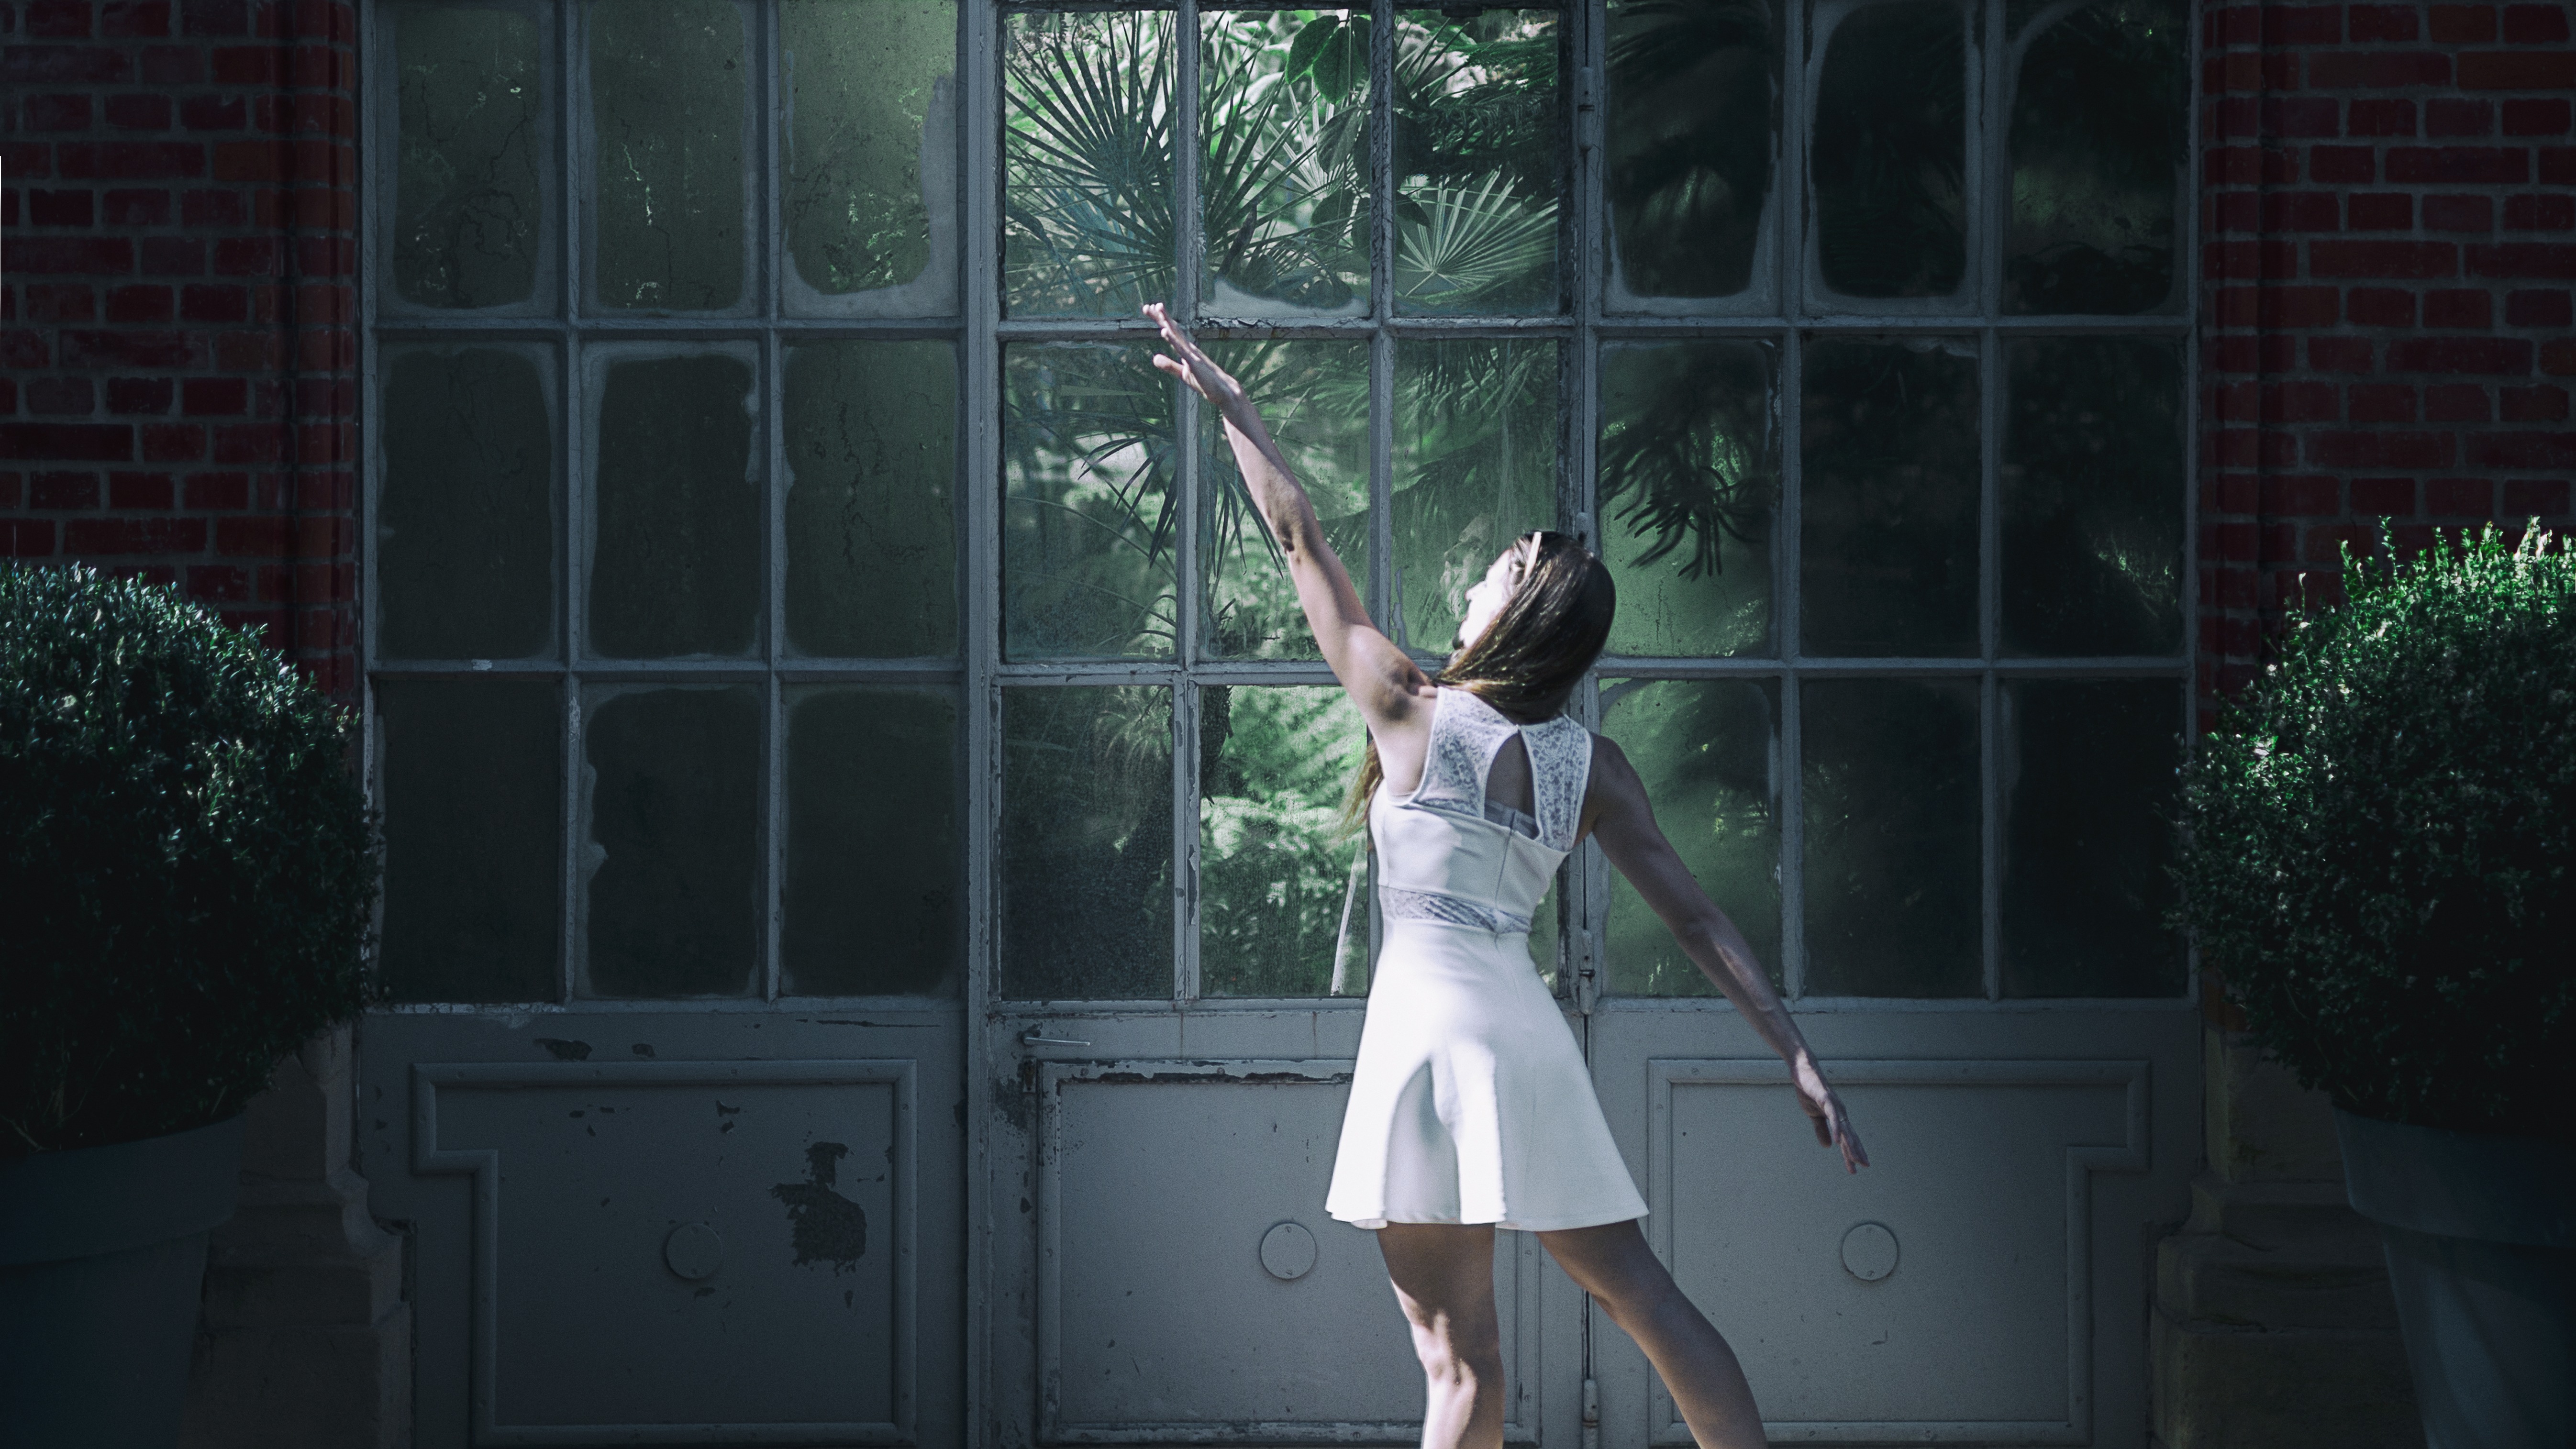 Photographie couleur avec la mise en scène d'une danseuse devant une serre